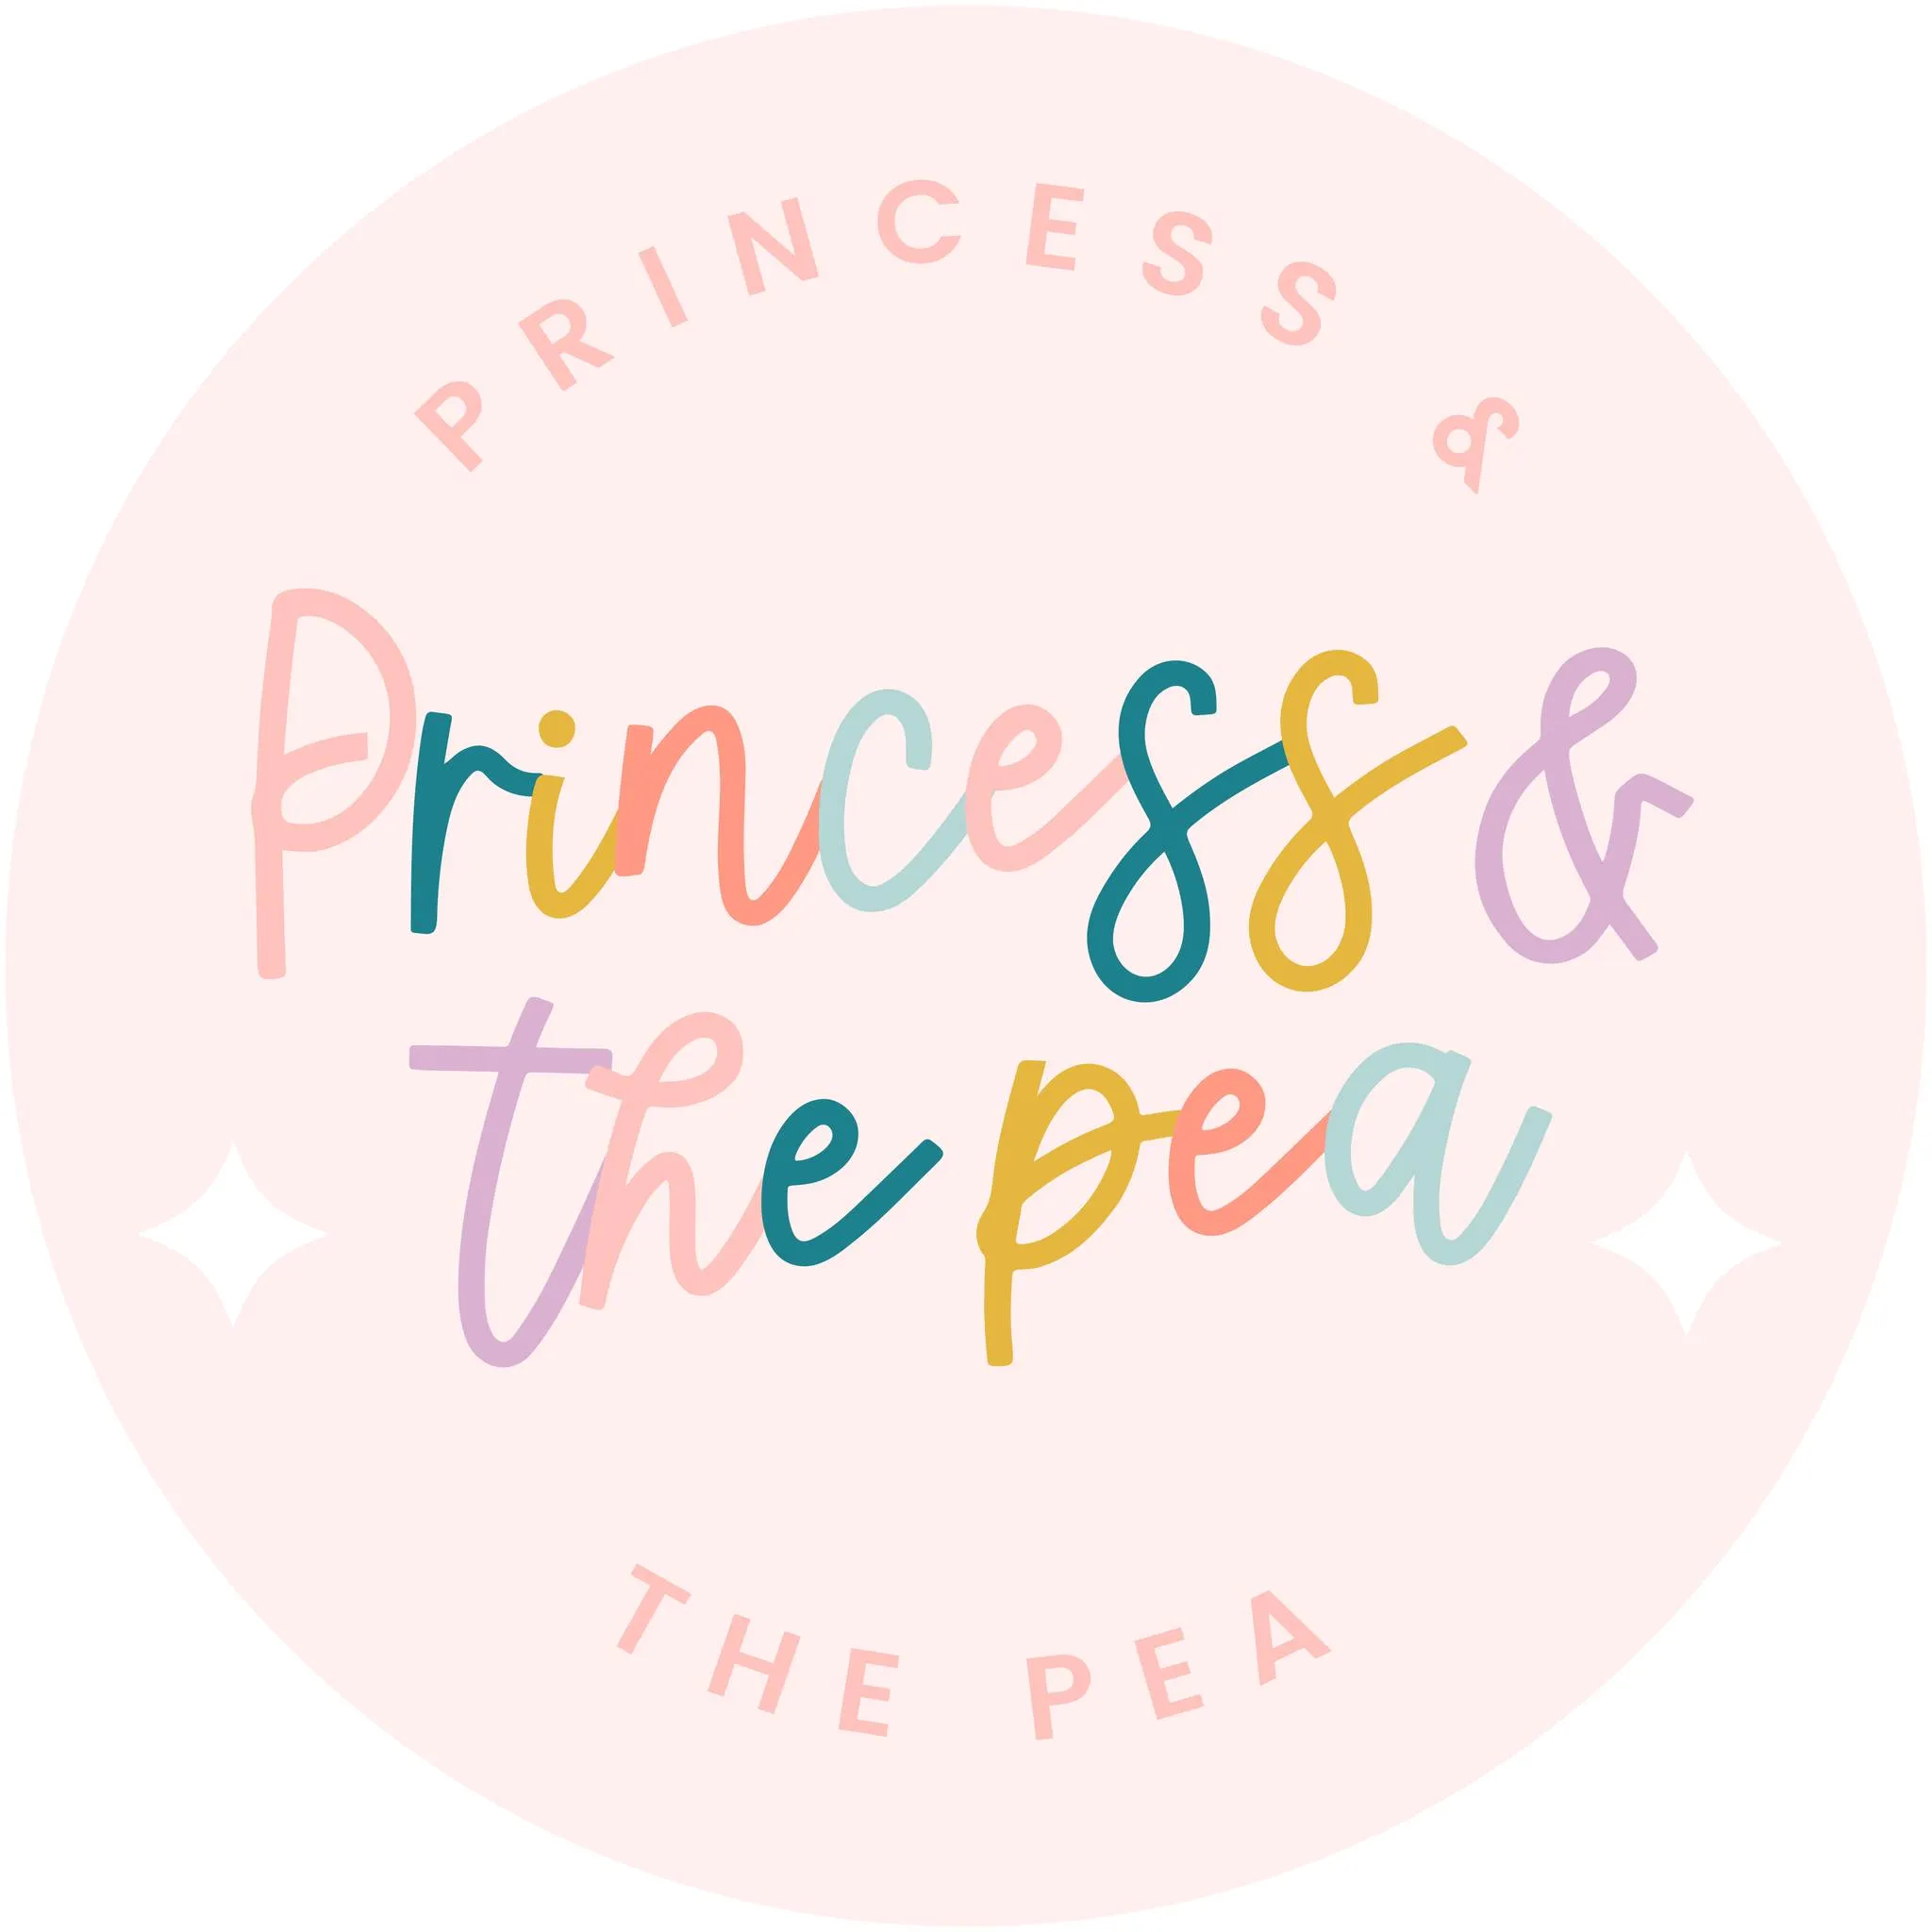 Digital Gift Card Starting At $18.71 At Princess Pea